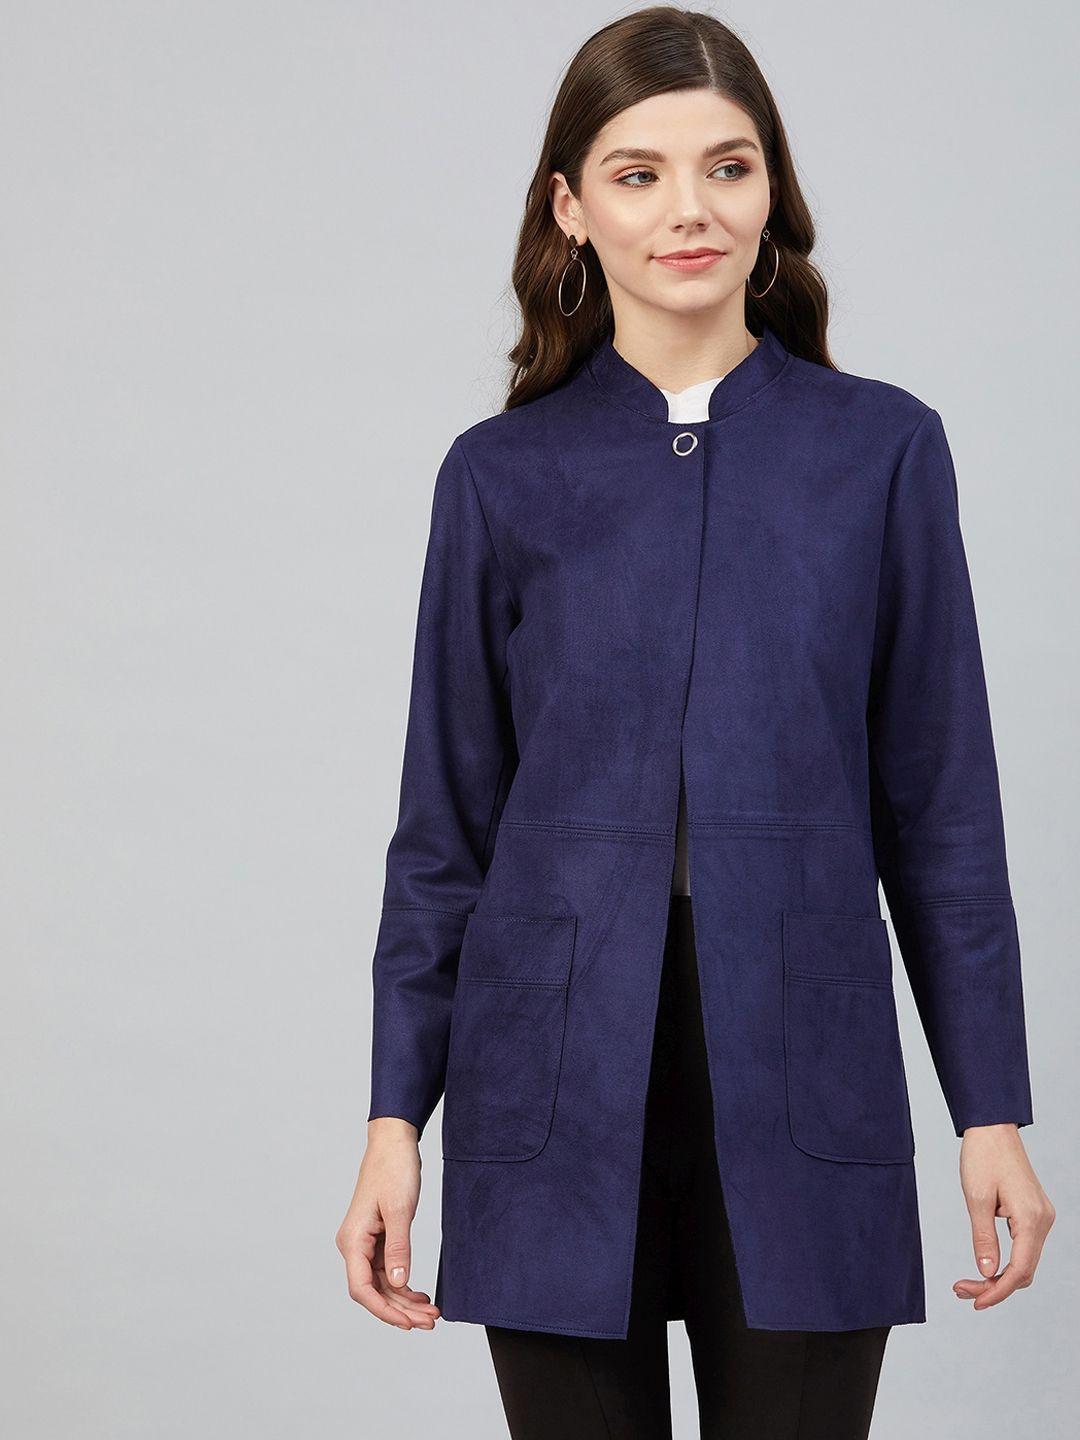 carlton-london-women-blue-suede-longline-tailored-jacket